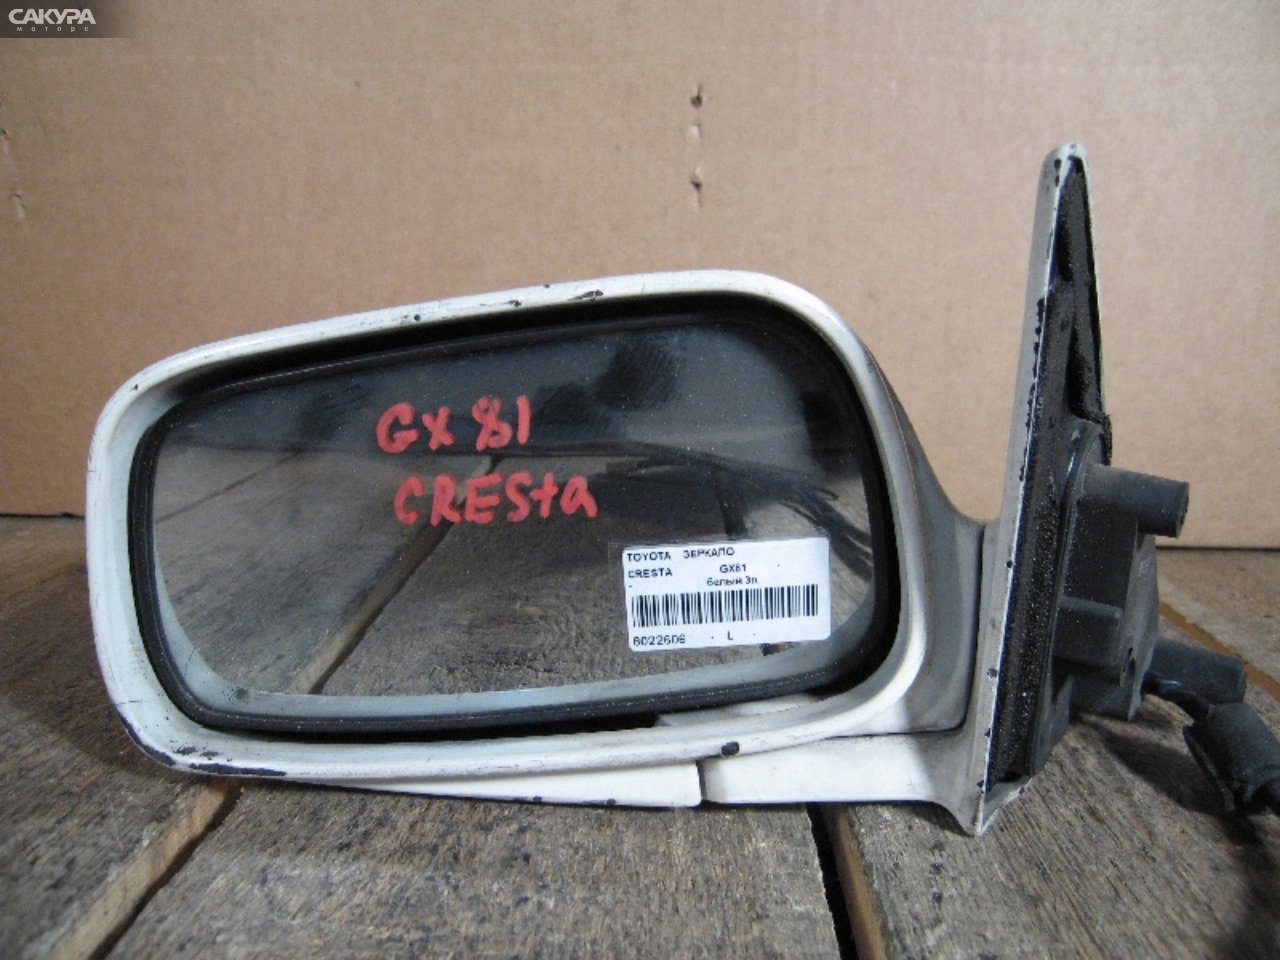 Зеркало боковое левое Toyota Cresta GX81: купить в Сакура Абакан.